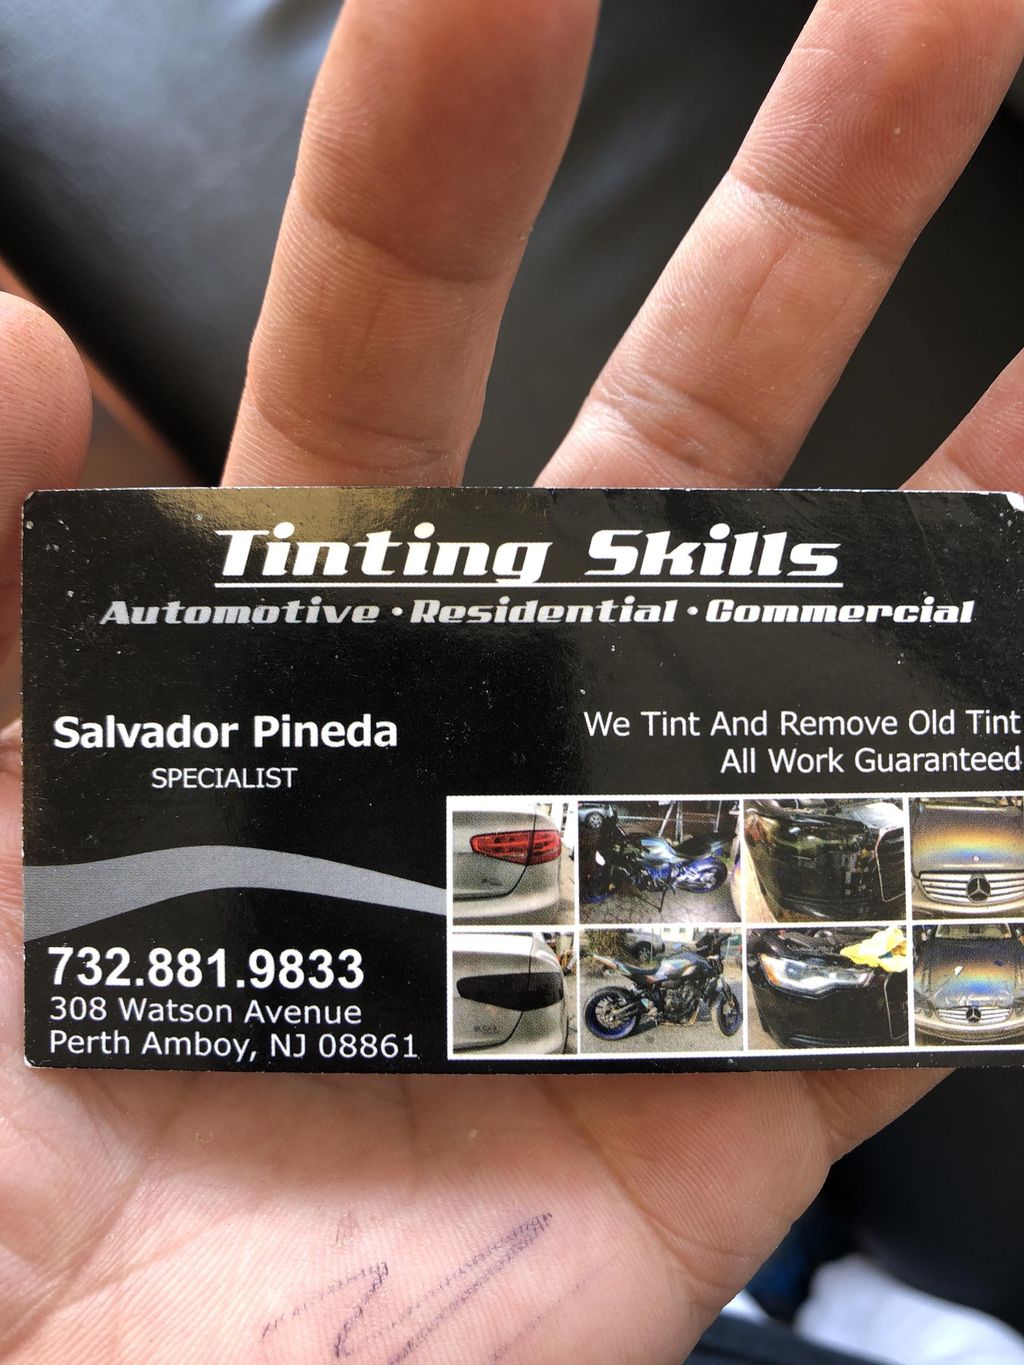 Tinting Skills LLC